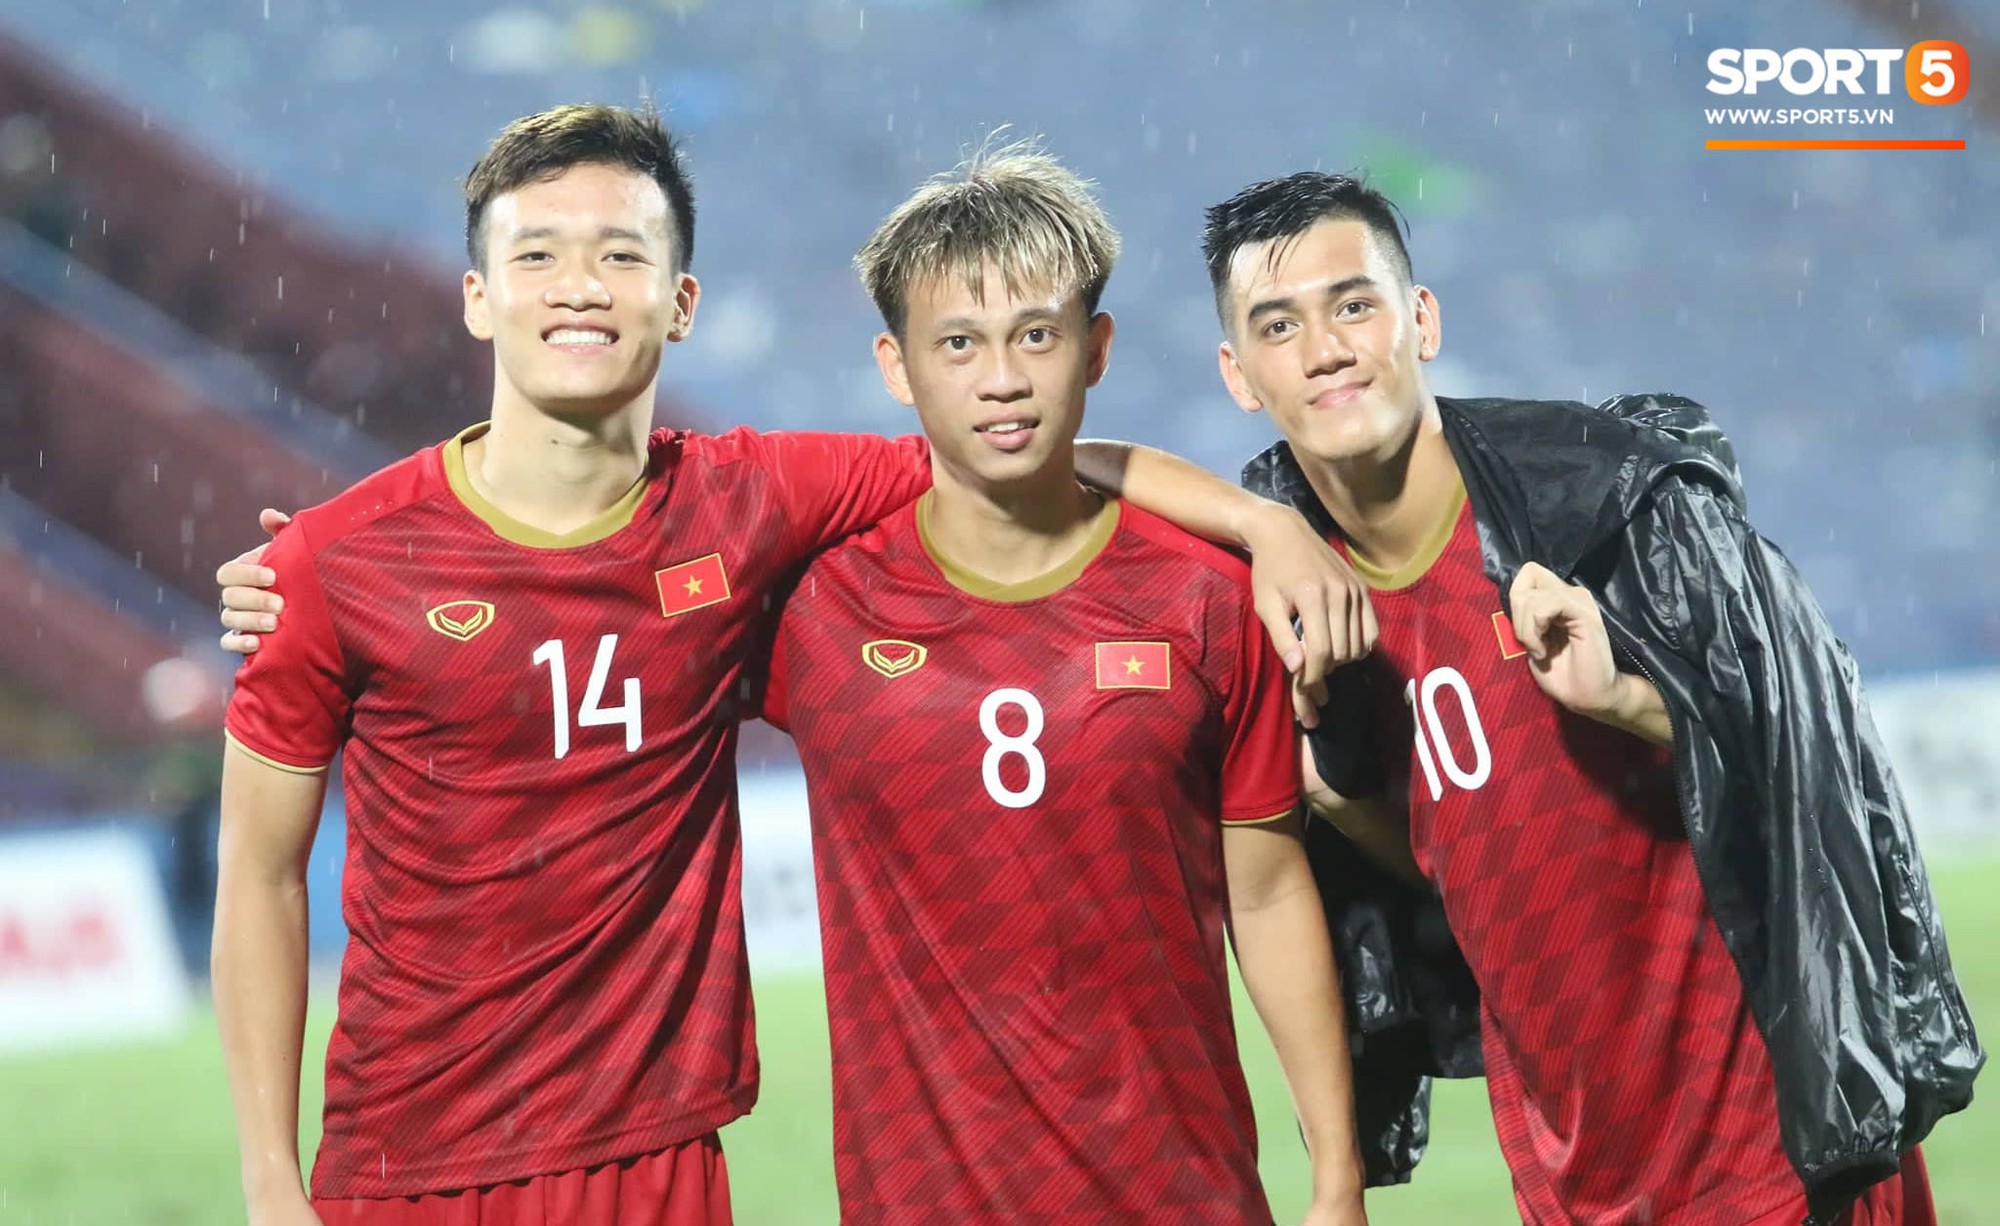 U23 Việt Nam hạ thuyết phục U23 Myanmar trong ngày xuất hiện 2 thẻ đỏ - Ảnh 3.